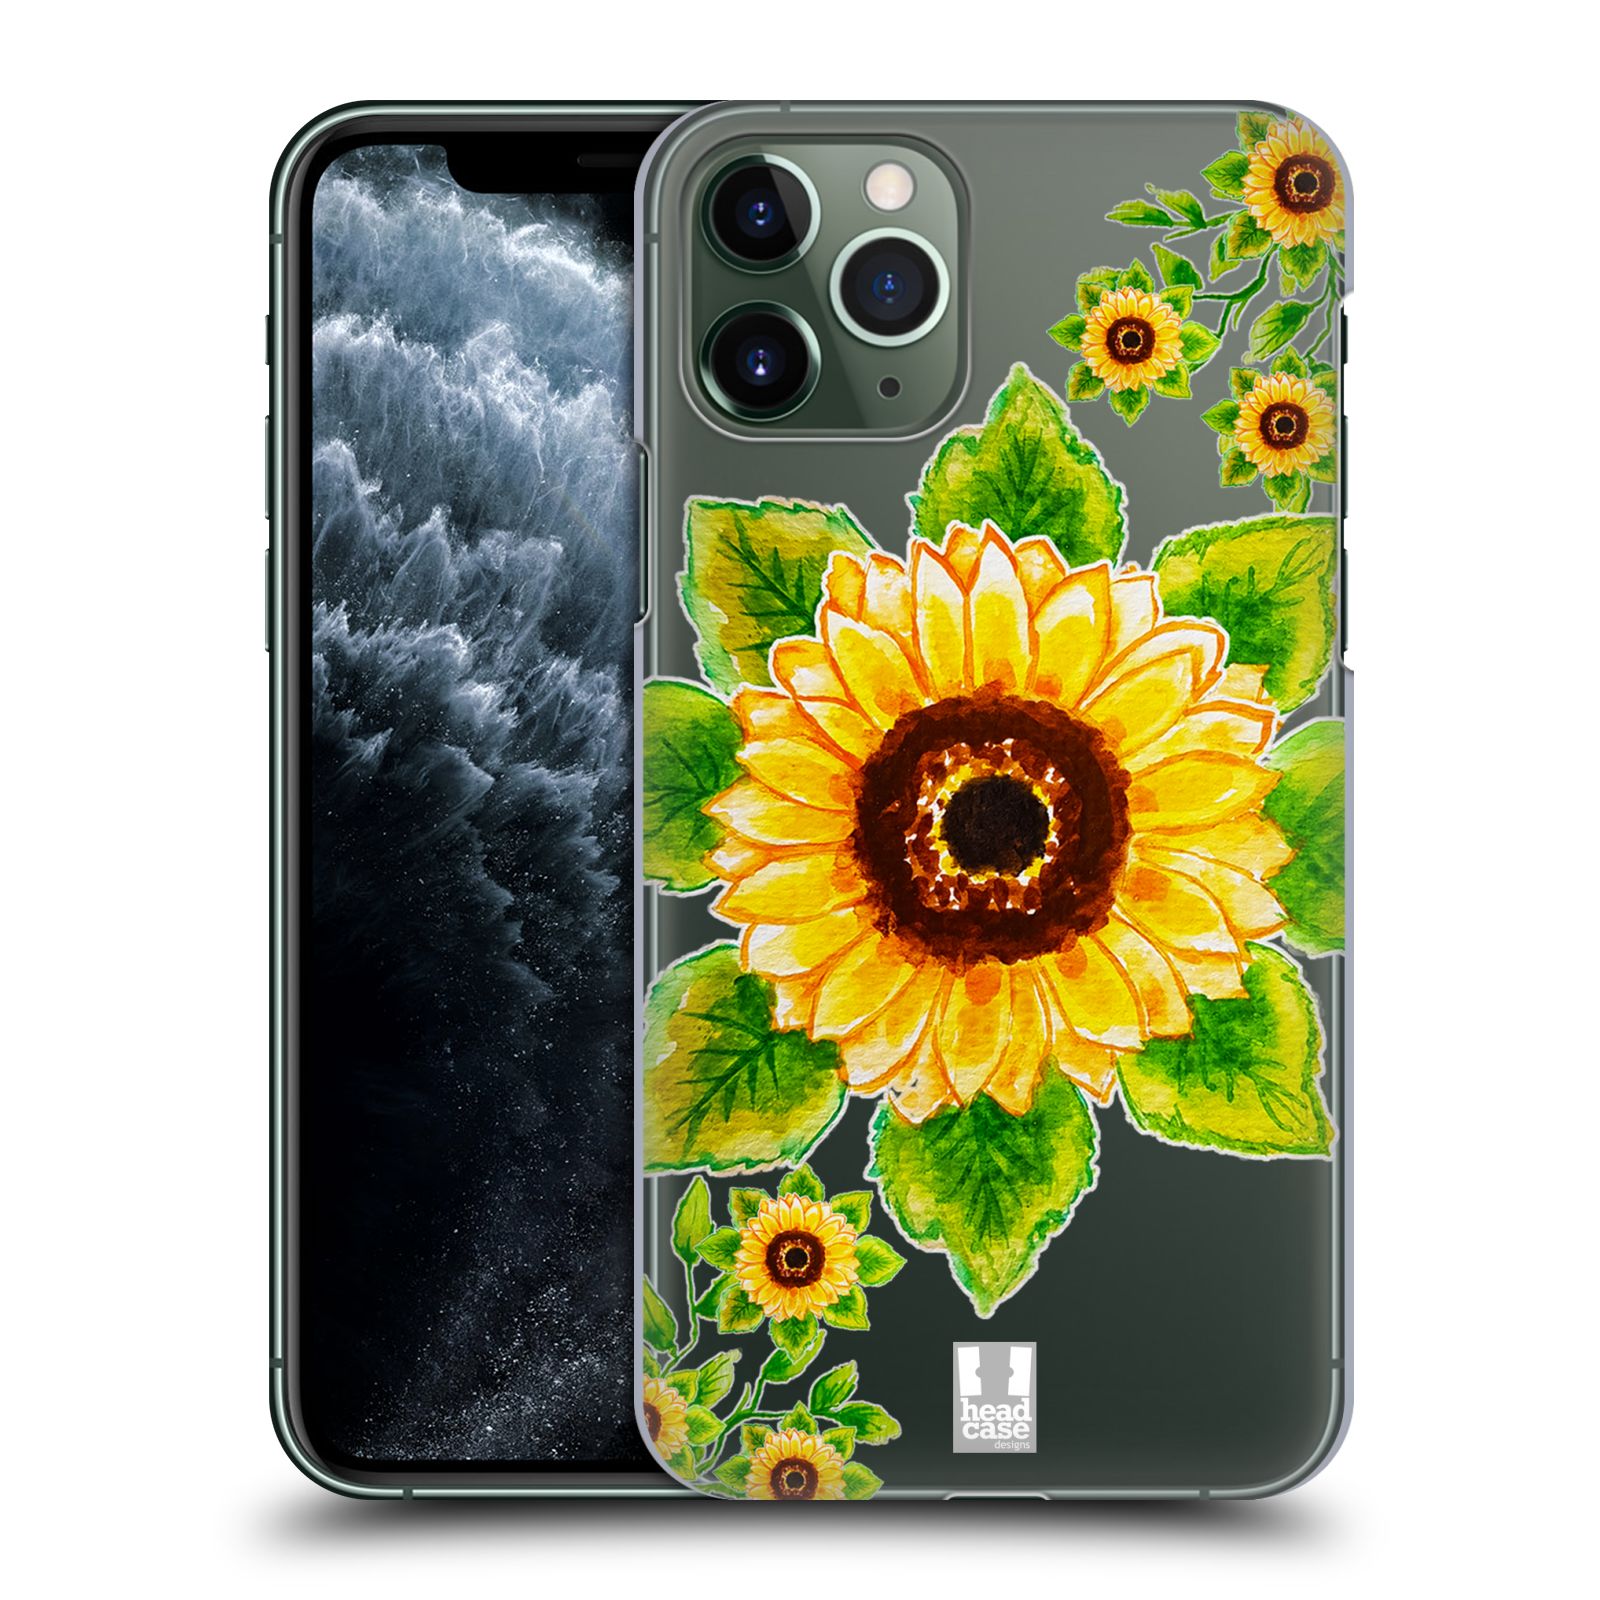 Pouzdro na mobil Apple Iphone 11 PRO - HEAD CASE - Květina Slunečnice vodní barvy